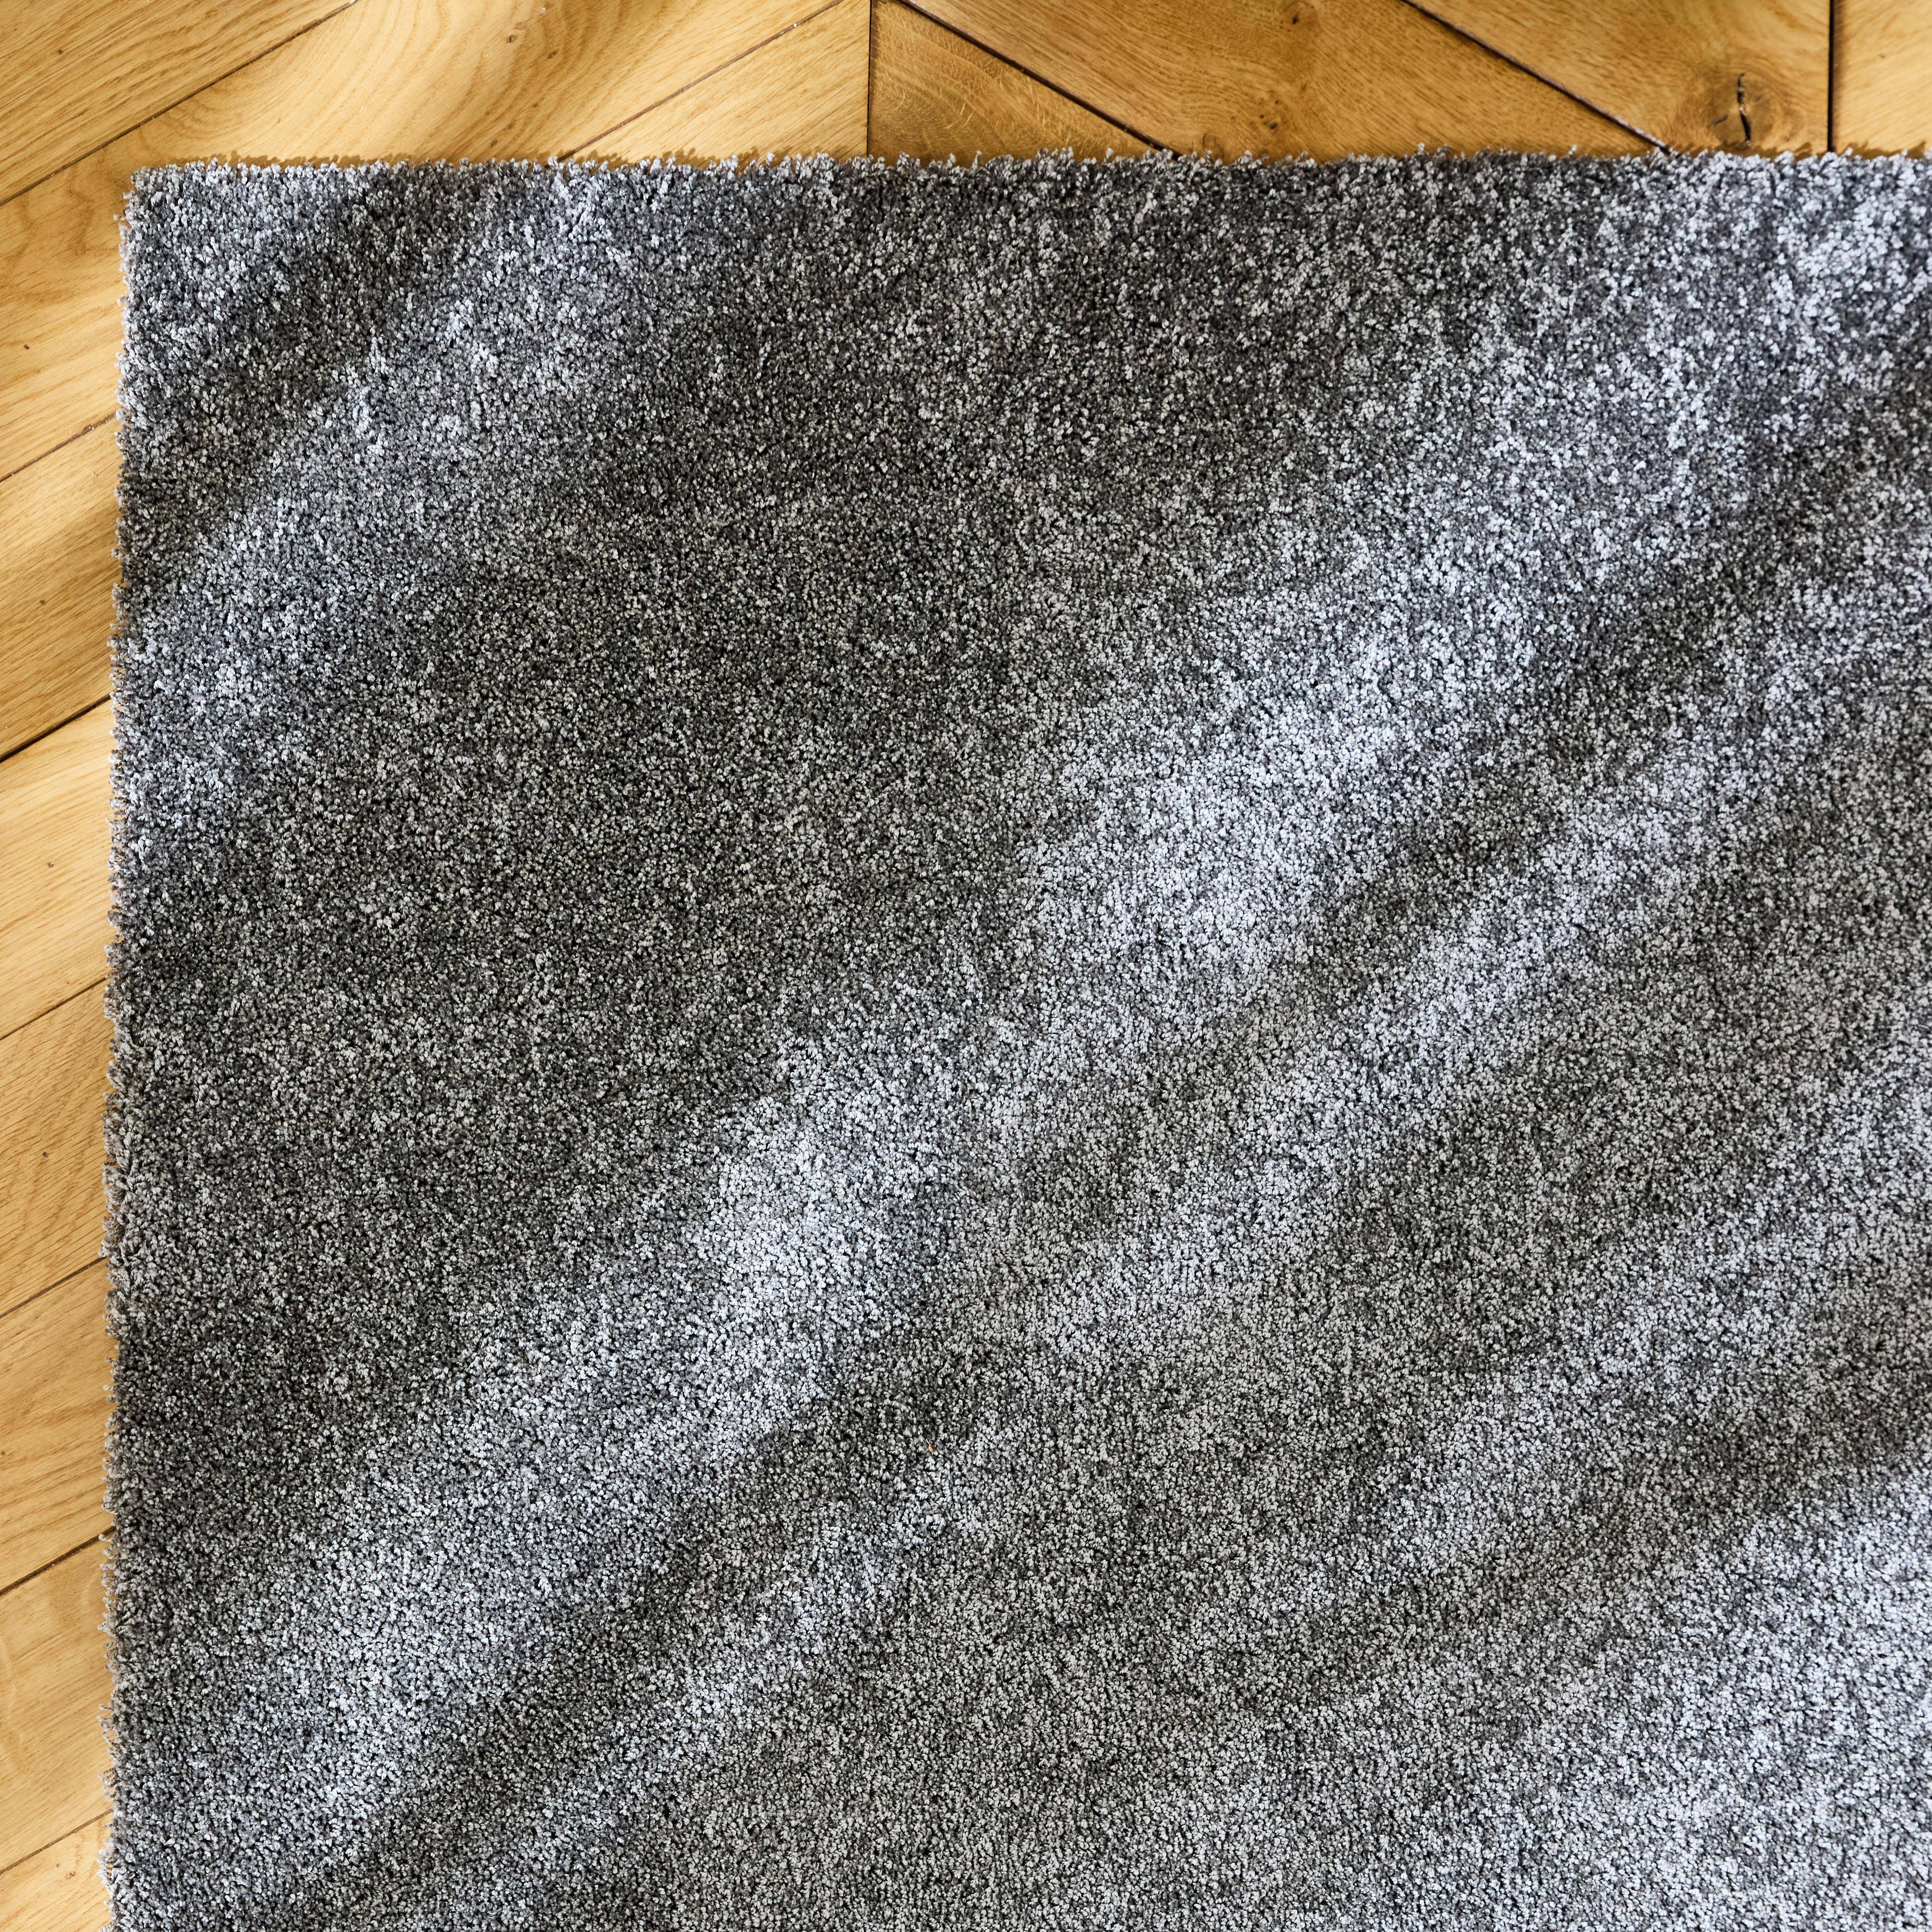 Tappeto per interni in velluto riccio grigio antracite, 160 x 230 cm, a pelo corto con effetto pelo ad anello,sweeek,Photo2